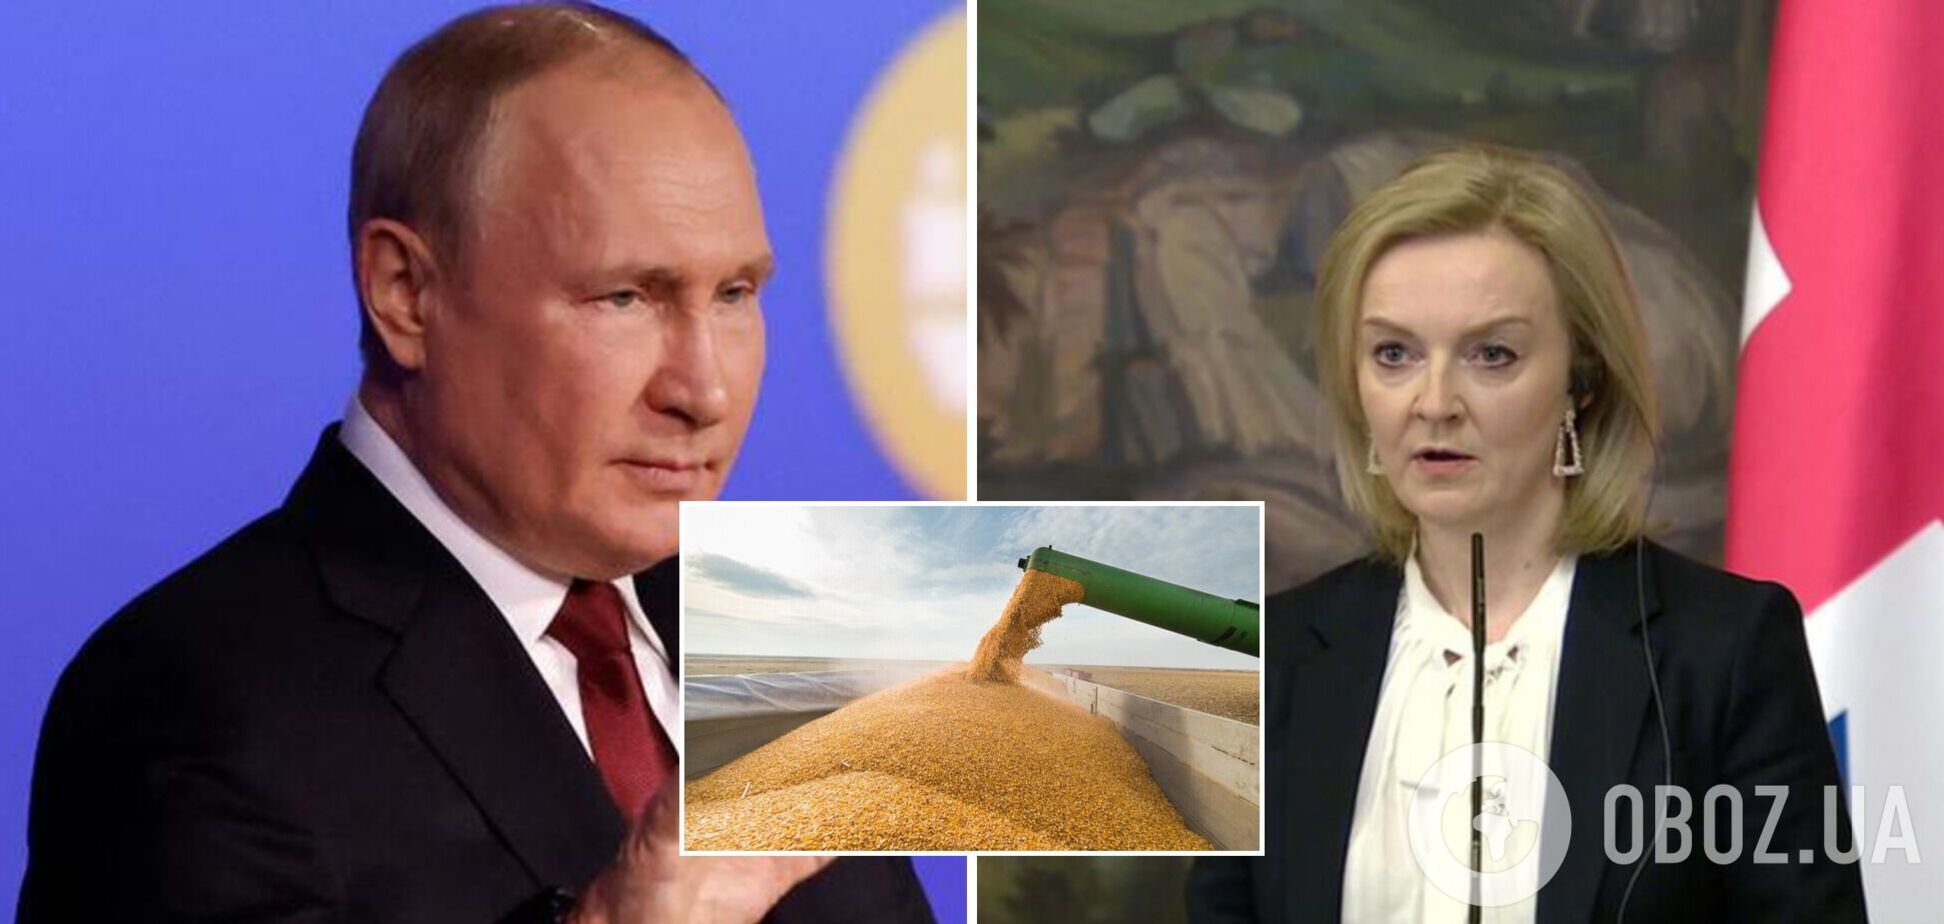 Трасс заявила, що Путін використовує голод як зброю, і закликала терміново вжити заходів